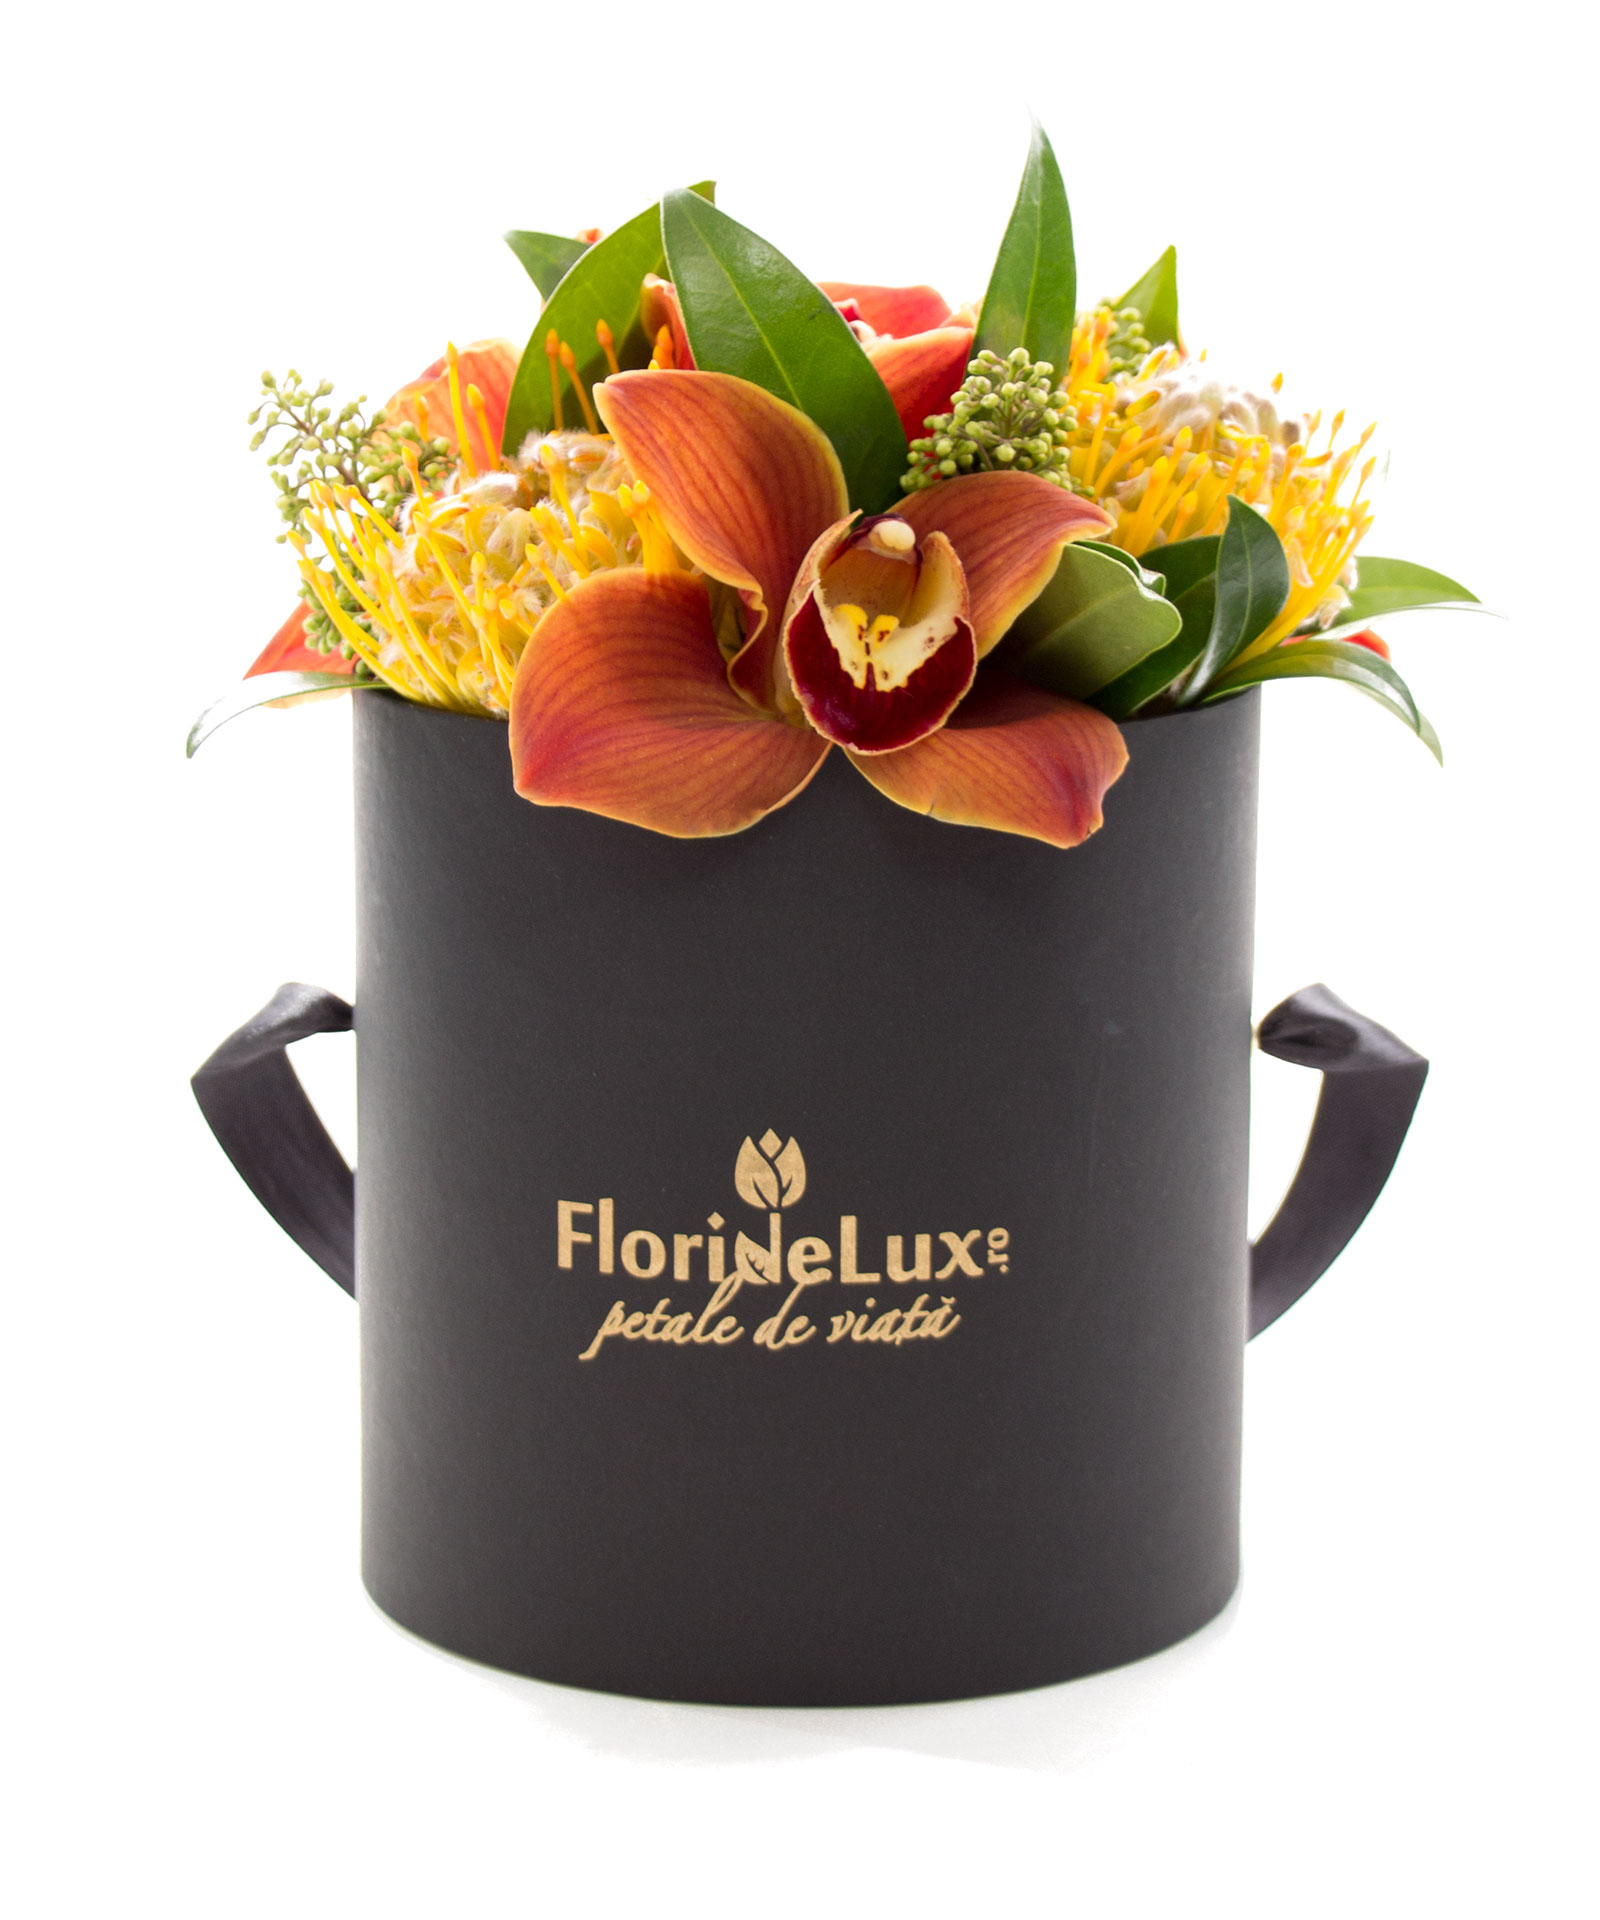 Cutie de lux cu flori exotice si vin Tralca - cele mai frumoase cadou uimesc prin originalitate si eleganta. Iar aceasta cutie neagra cu auriu plina cu flori exotice rare face exact aceasta impresie! Desigur, cadoul este completat de o sticla de vin 